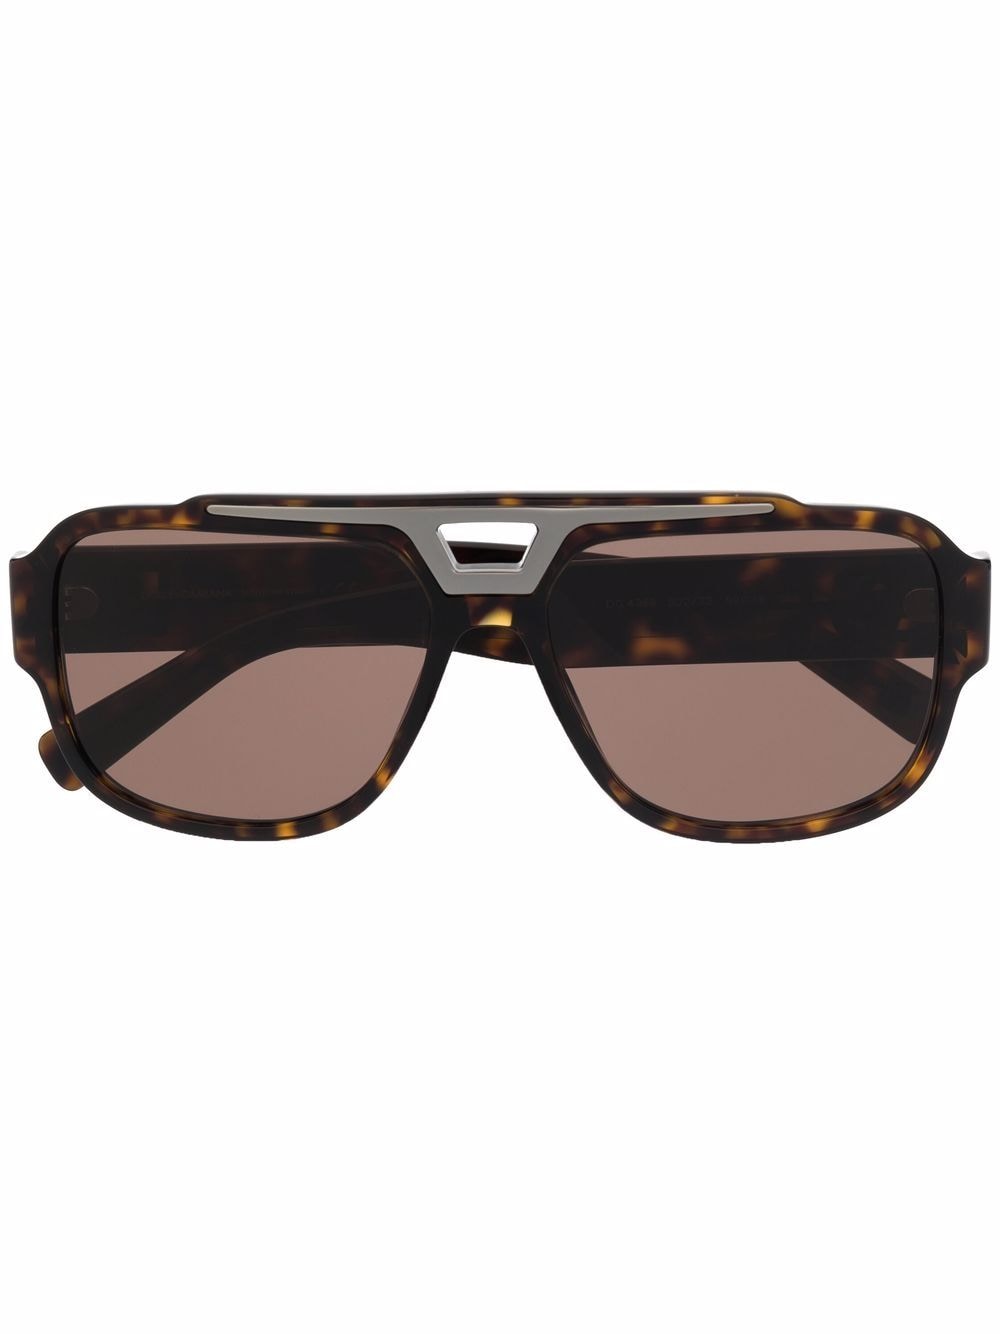 фото Dolce & gabbana eyewear солнцезащитные очки-авиаторы